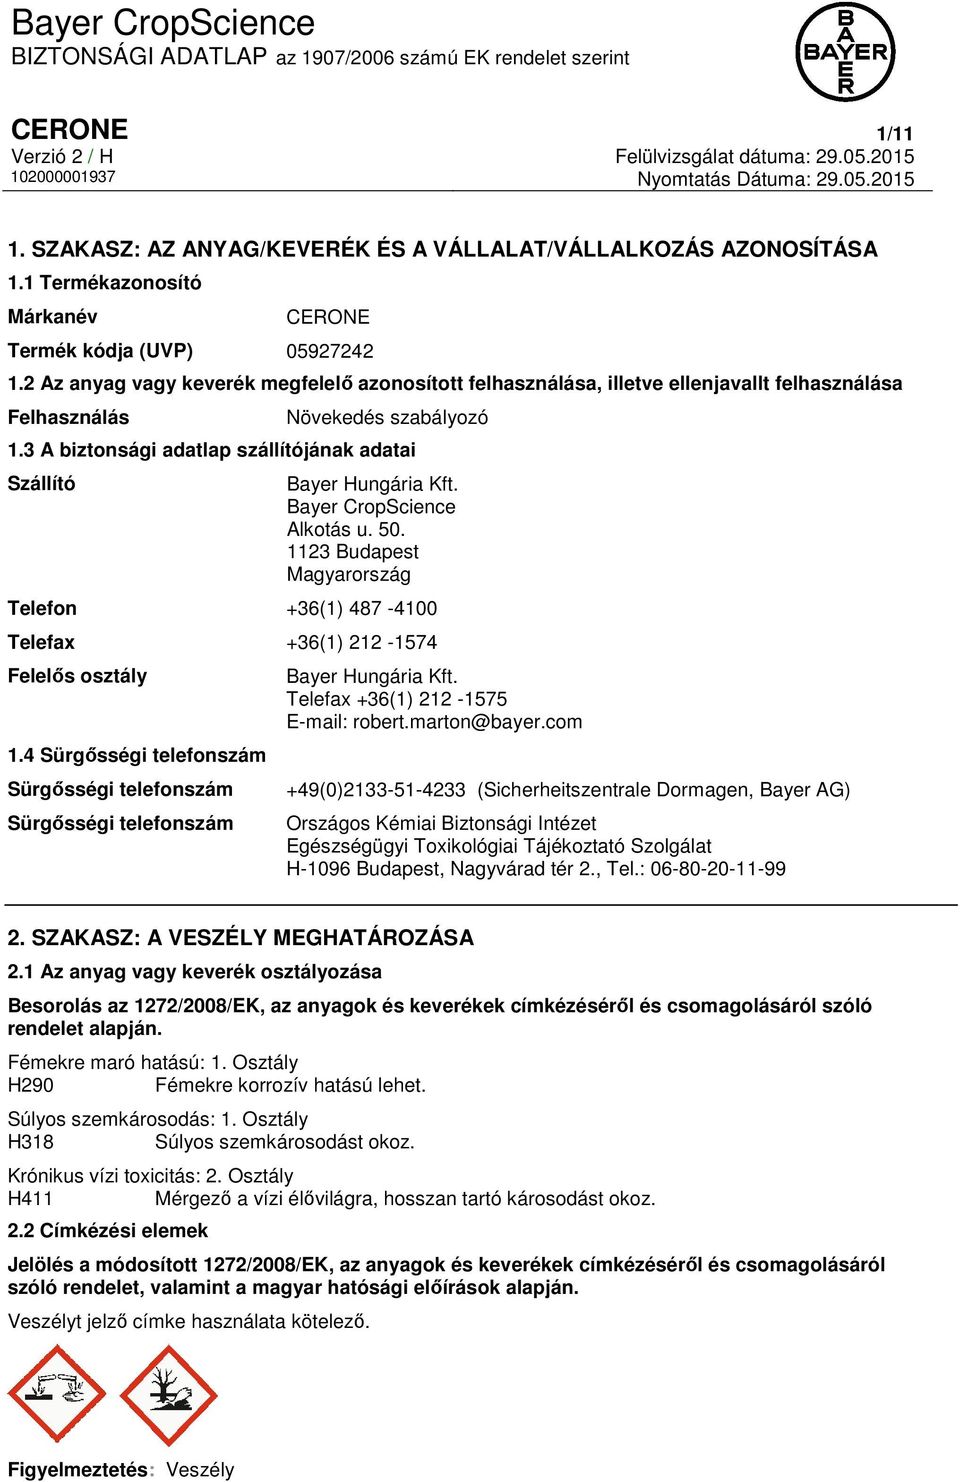 3 A biztonsági adatlap szállítójának adatai Szállító Bayer Hungária Kft. Bayer CropScience Alkotás u. 50. 1123 Budapest Magyarország Telefon +36(1) 487-4100 Telefax +36(1) 212-1574 Felelős osztály 1.